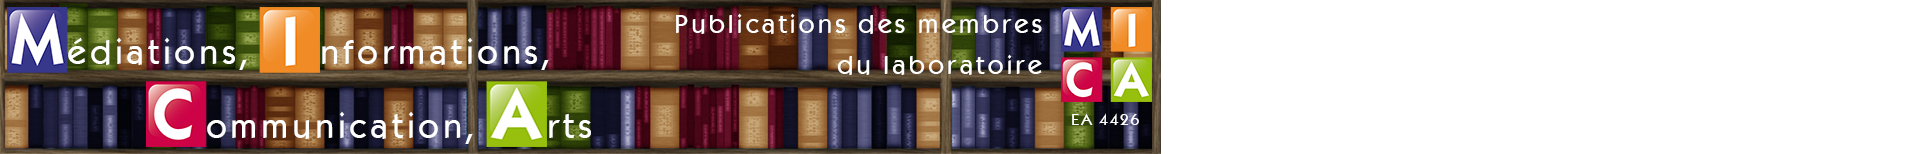 Archives ouvertes des membres du laboratoire MICA (Médiations, Informations, Communication, Arts)